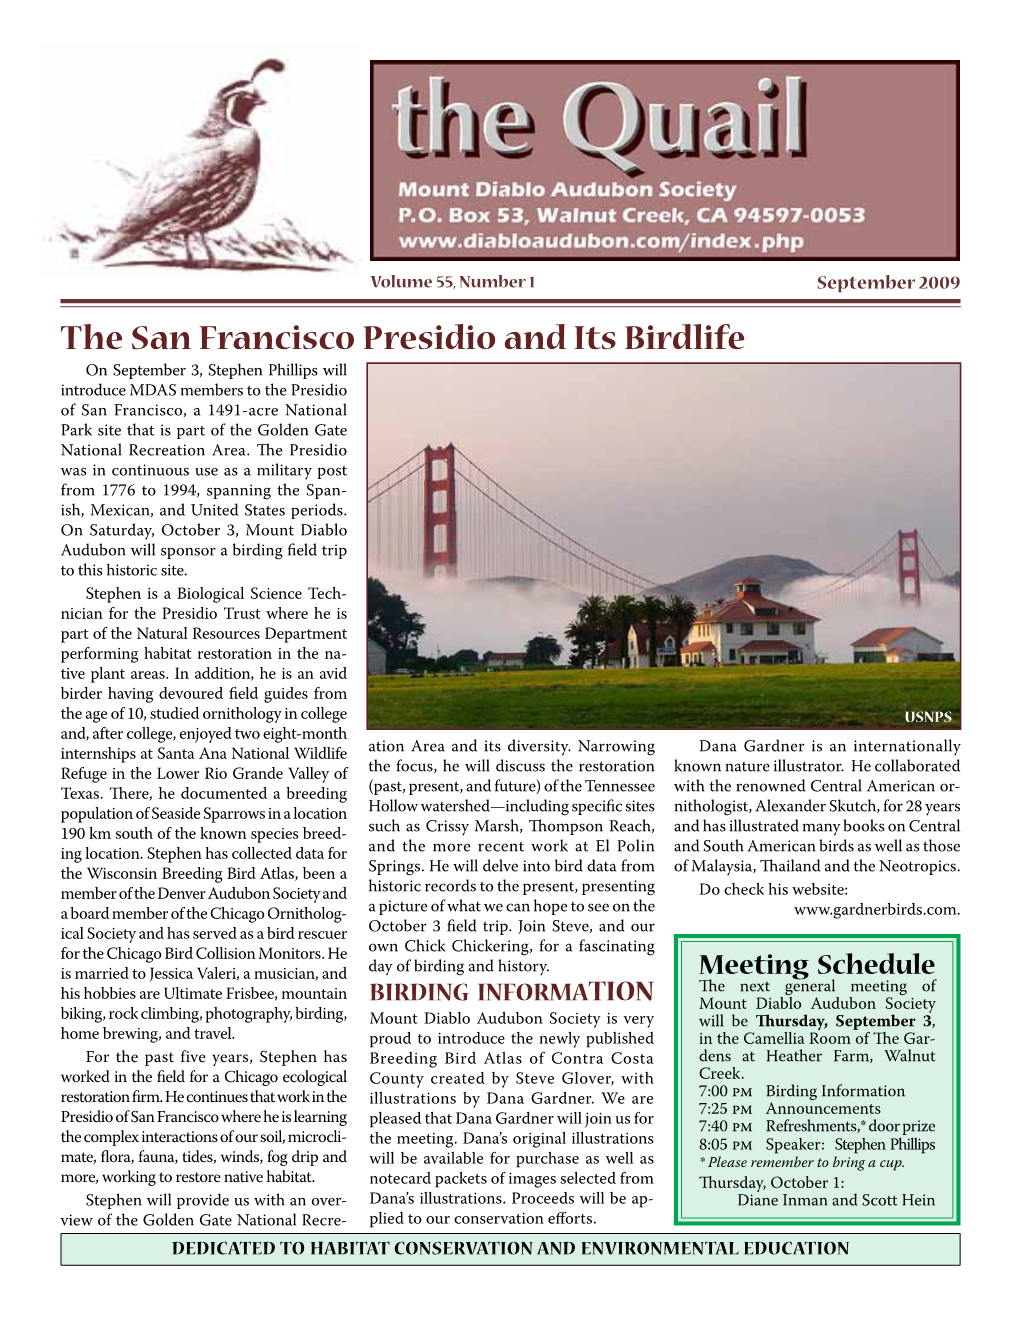 The San Francisco Presidio and Its Birdlife